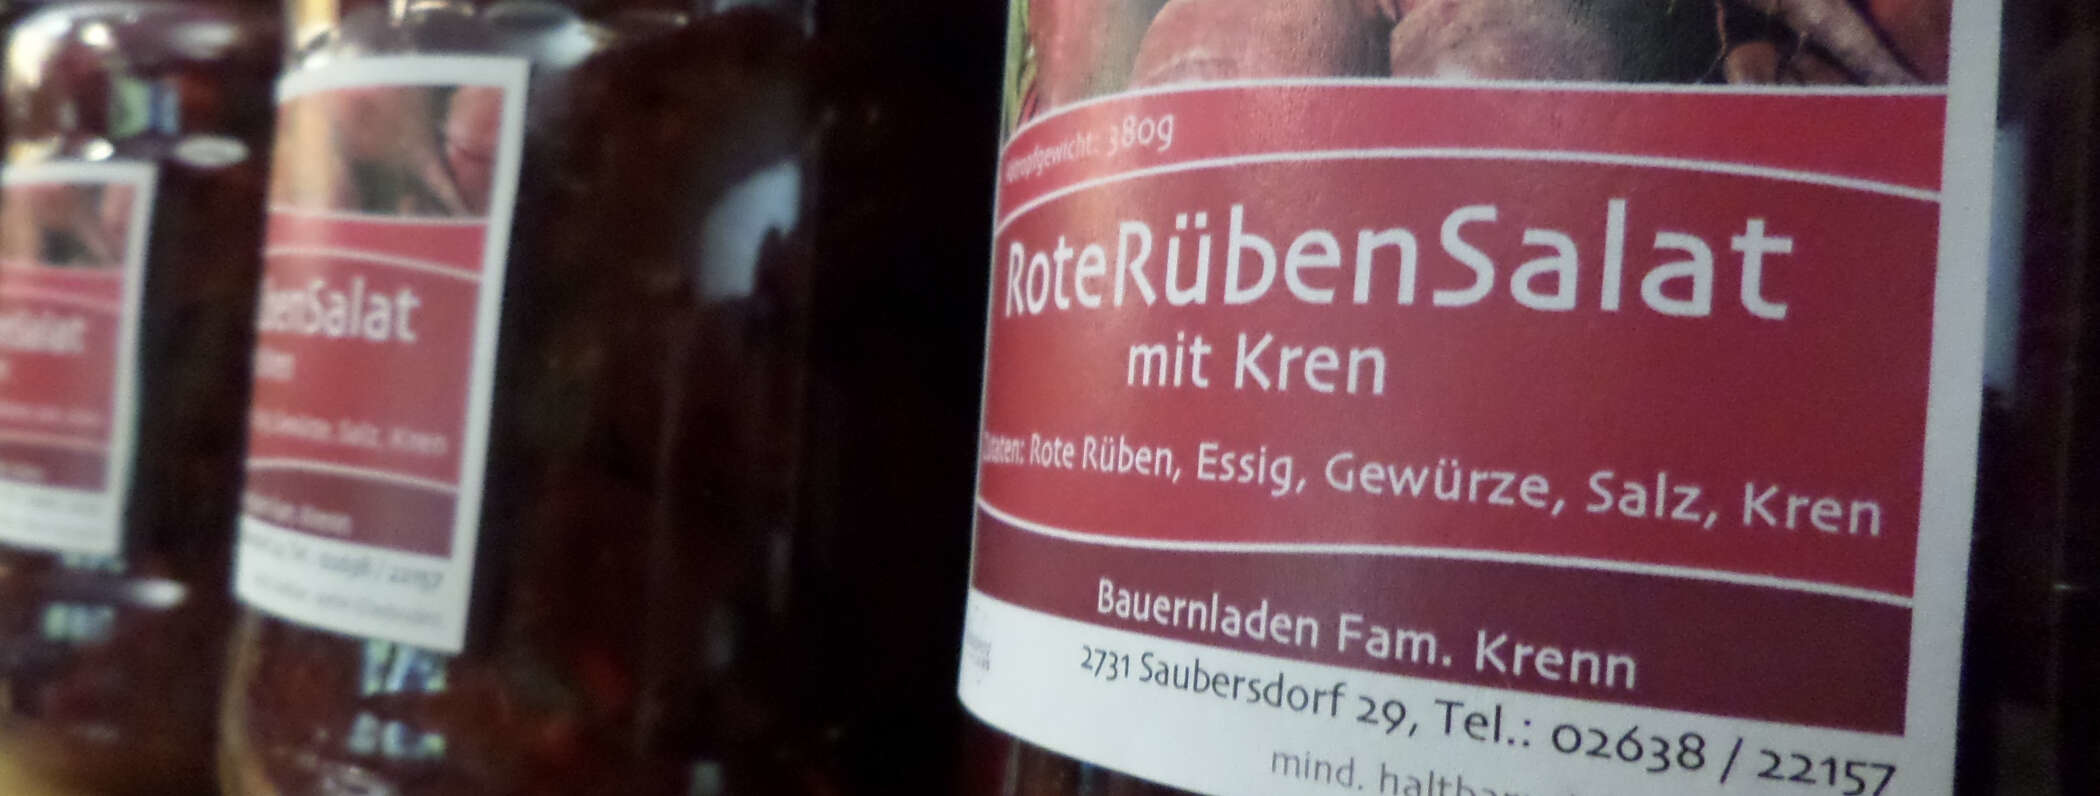 Rote-Rüben-Salat der Bauernladen Krenn GmbH